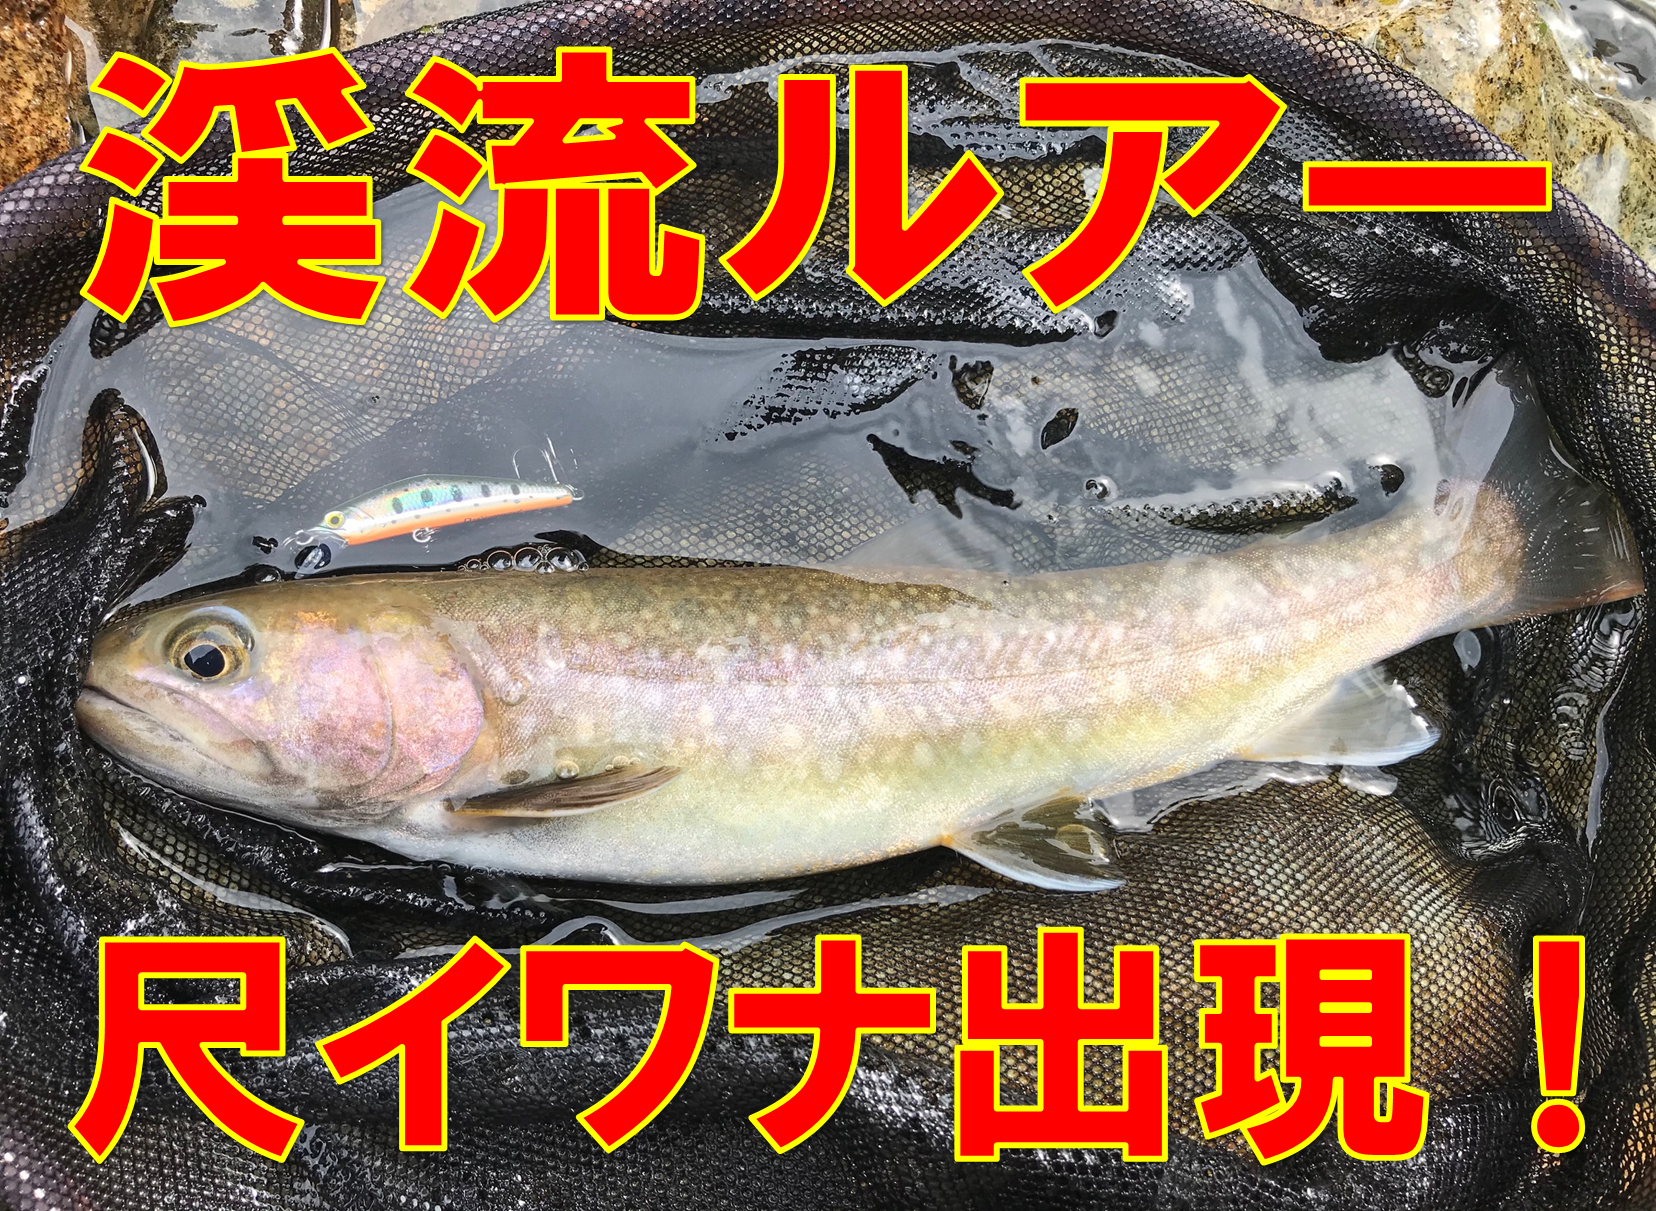 岐阜 渓流ルアーで尺イワナ出ました 釣具のイシグロ 釣り情報サイト